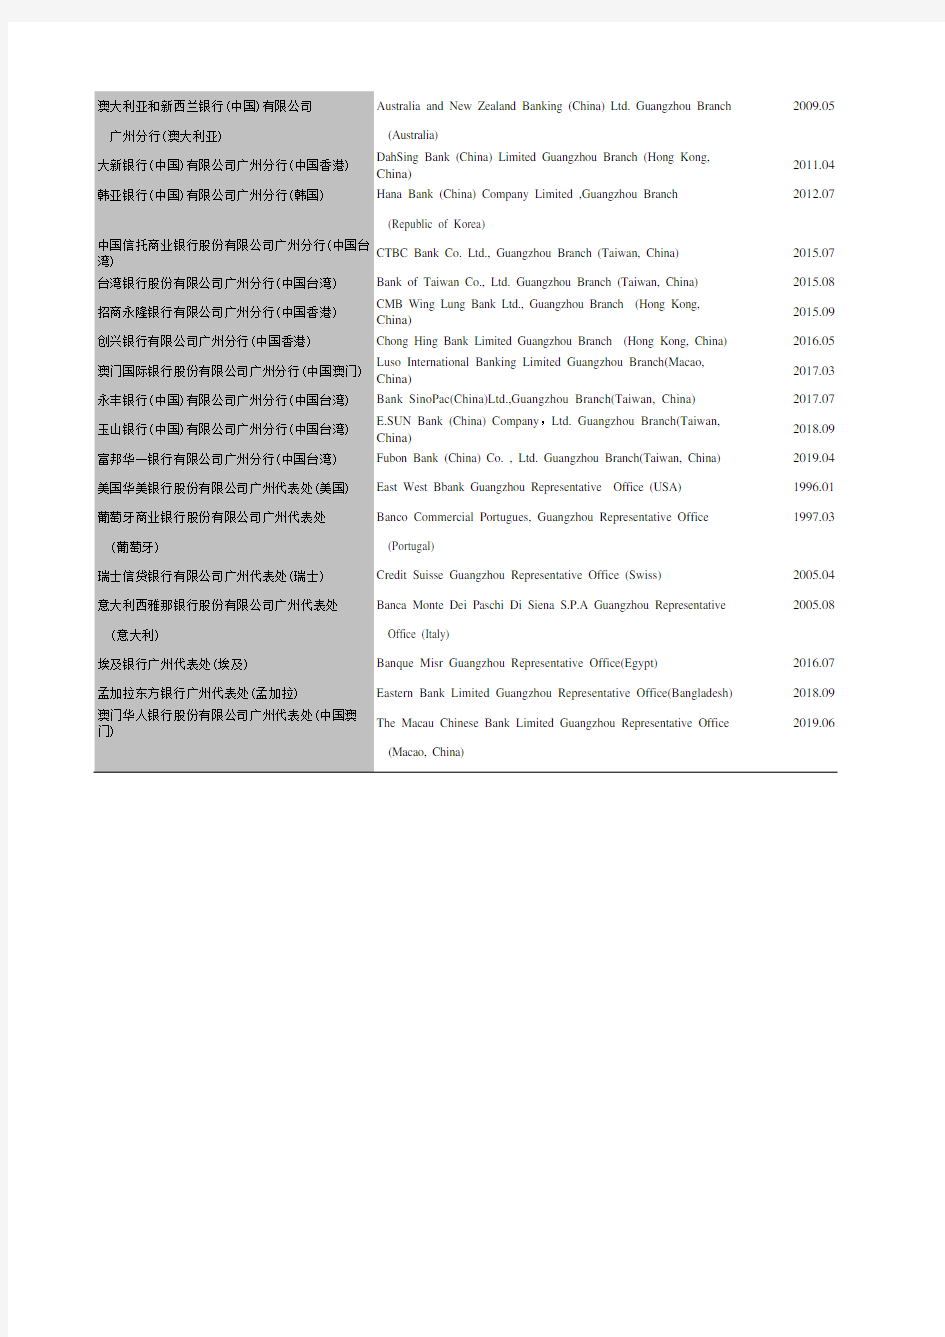 广州统计年鉴2020社会经济发展指标：主要外资金融机构及代表处一览表